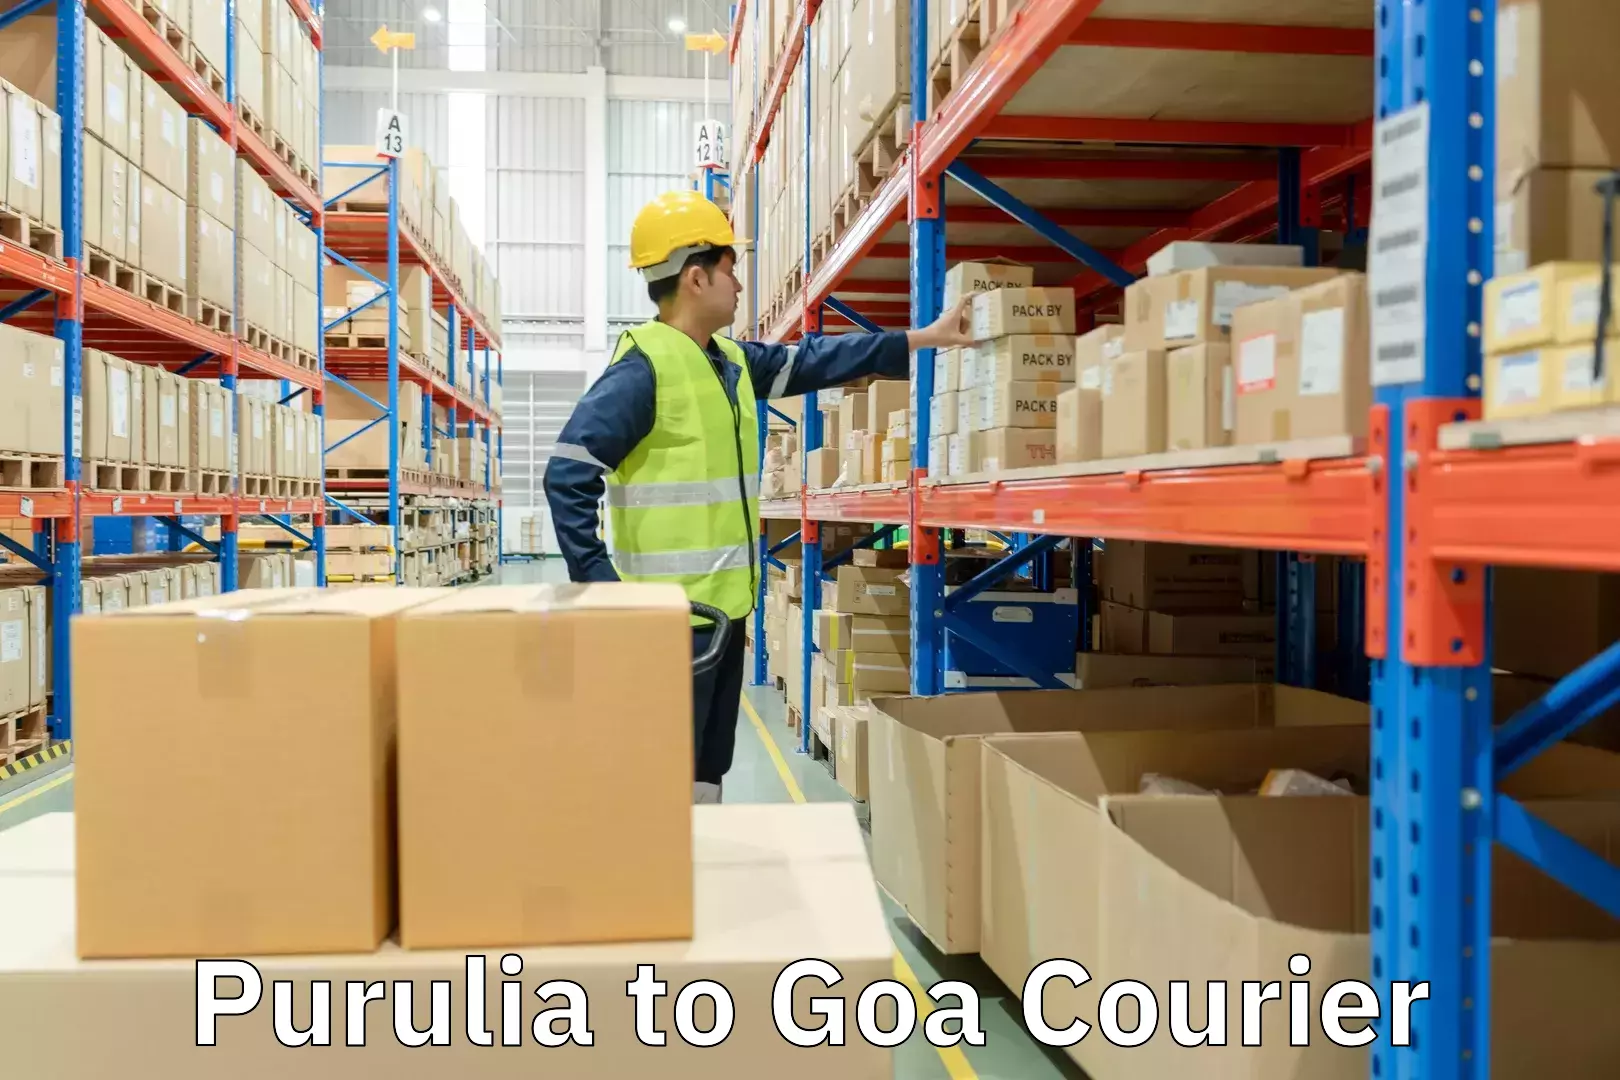 User-friendly delivery service Purulia to Goa